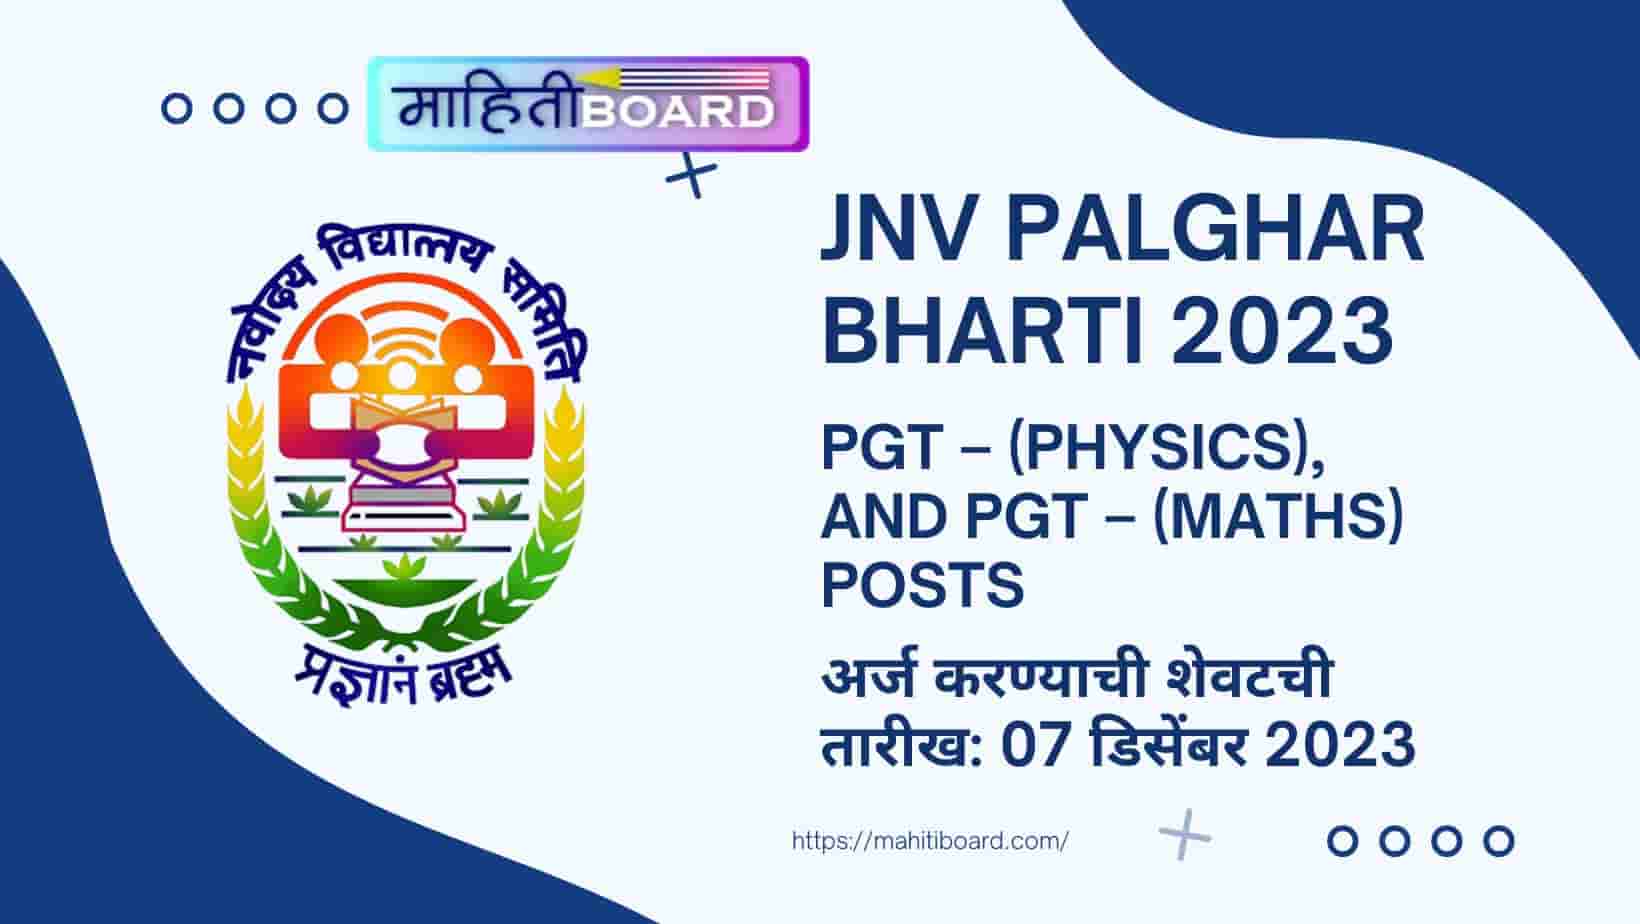 JNV Palghar Bharti 2023